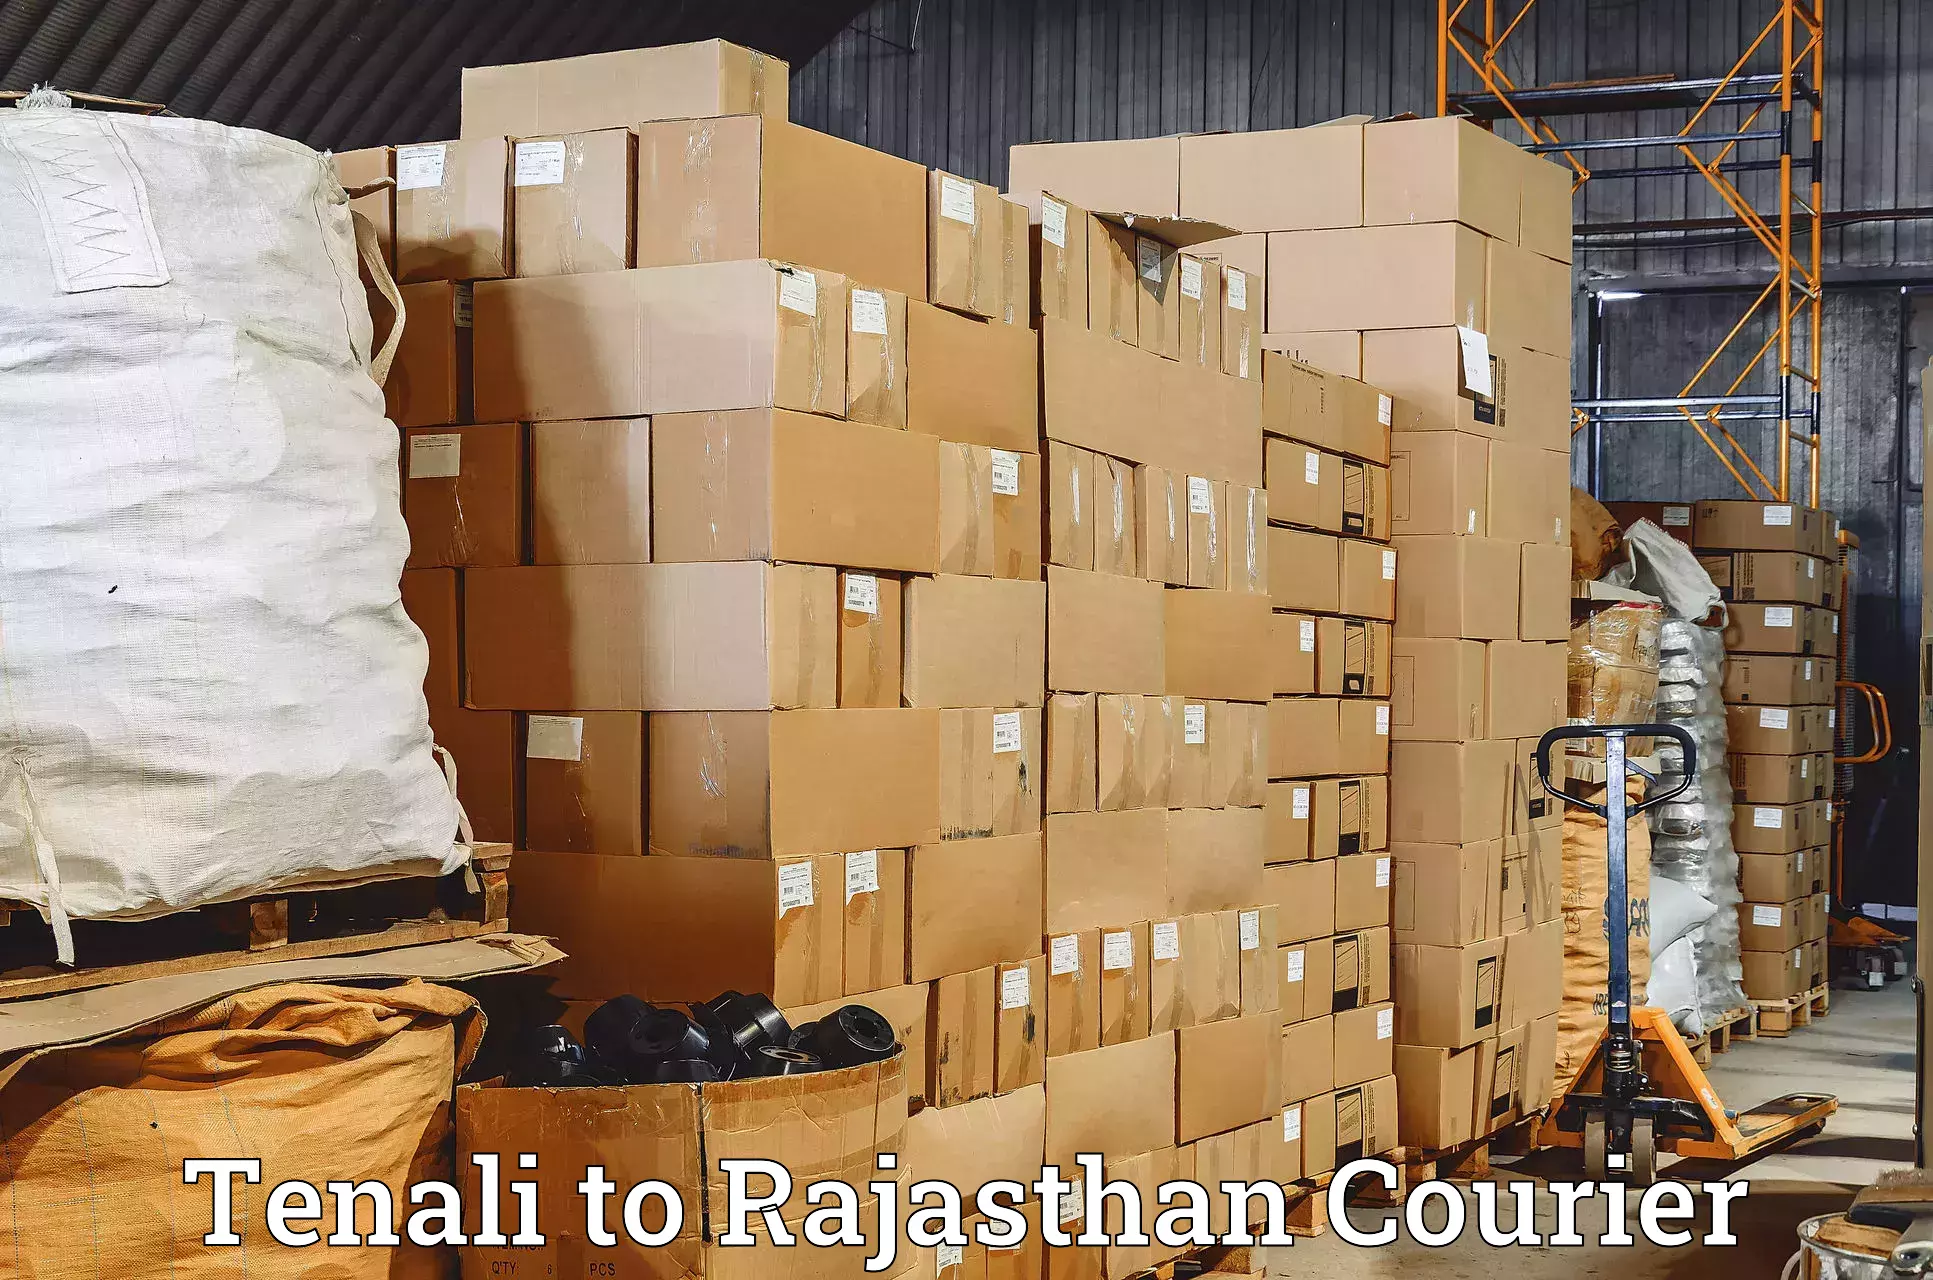 Efficient shipping operations Tenali to Keshoraipatan